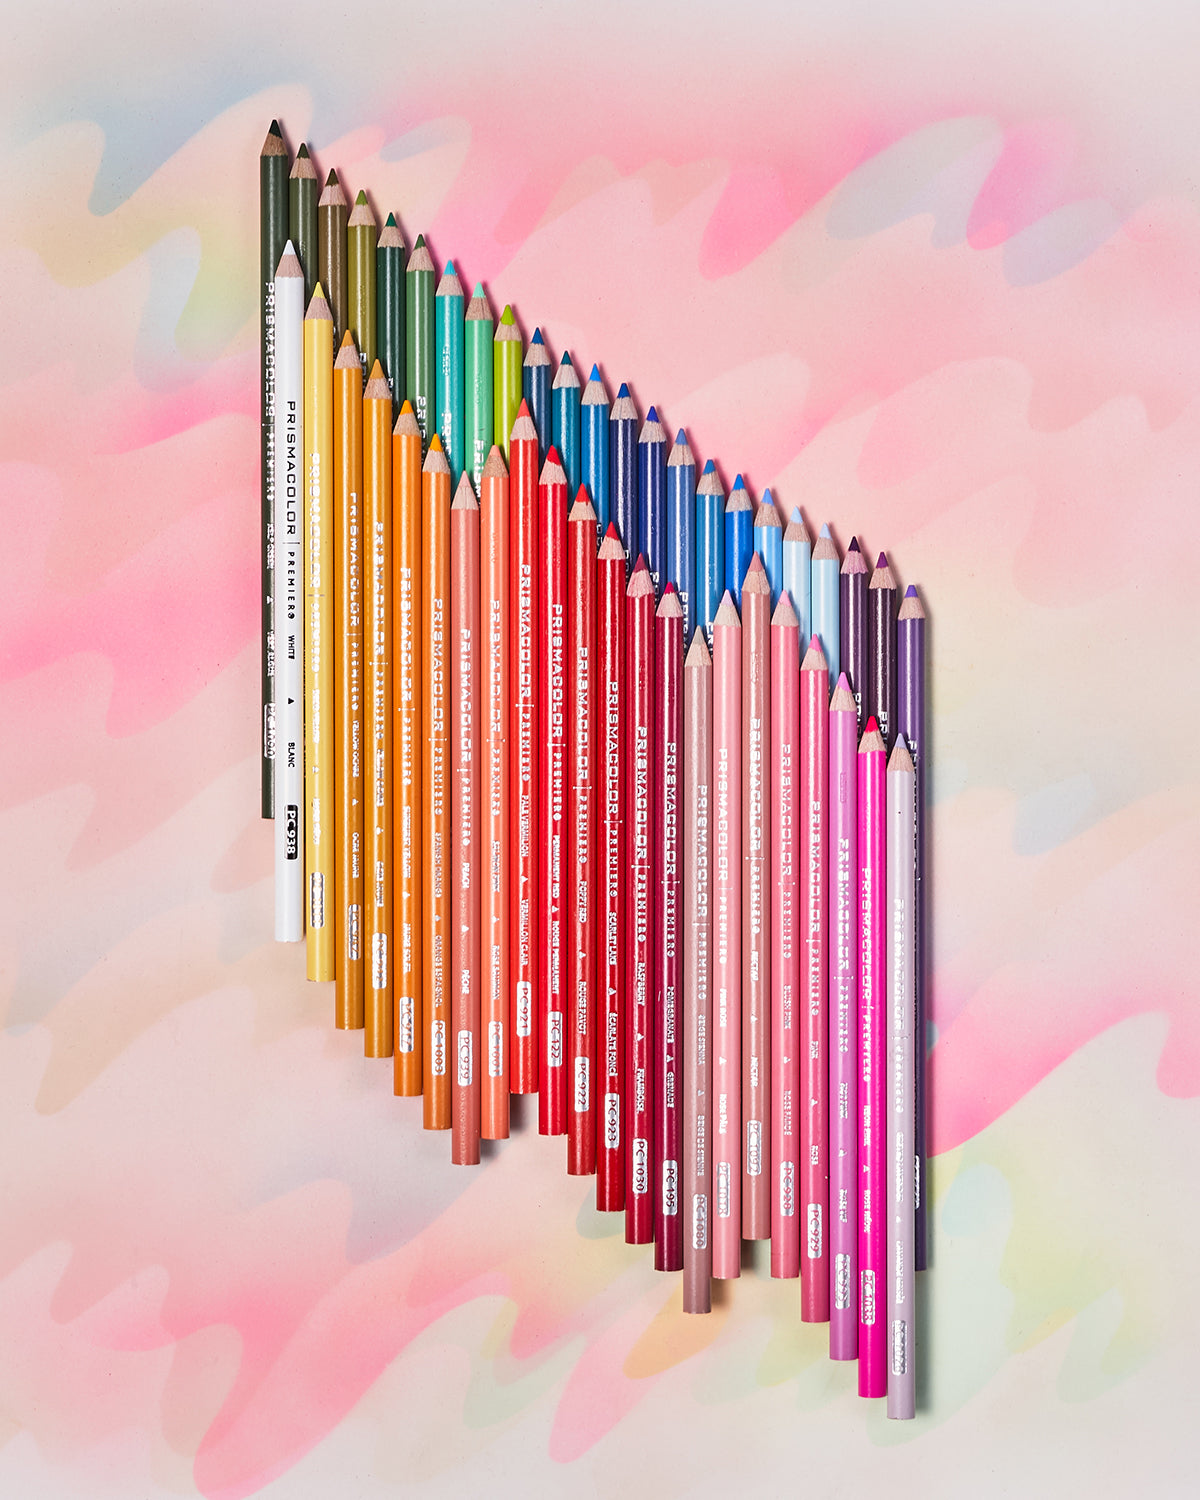 prismacolor colored pencils art